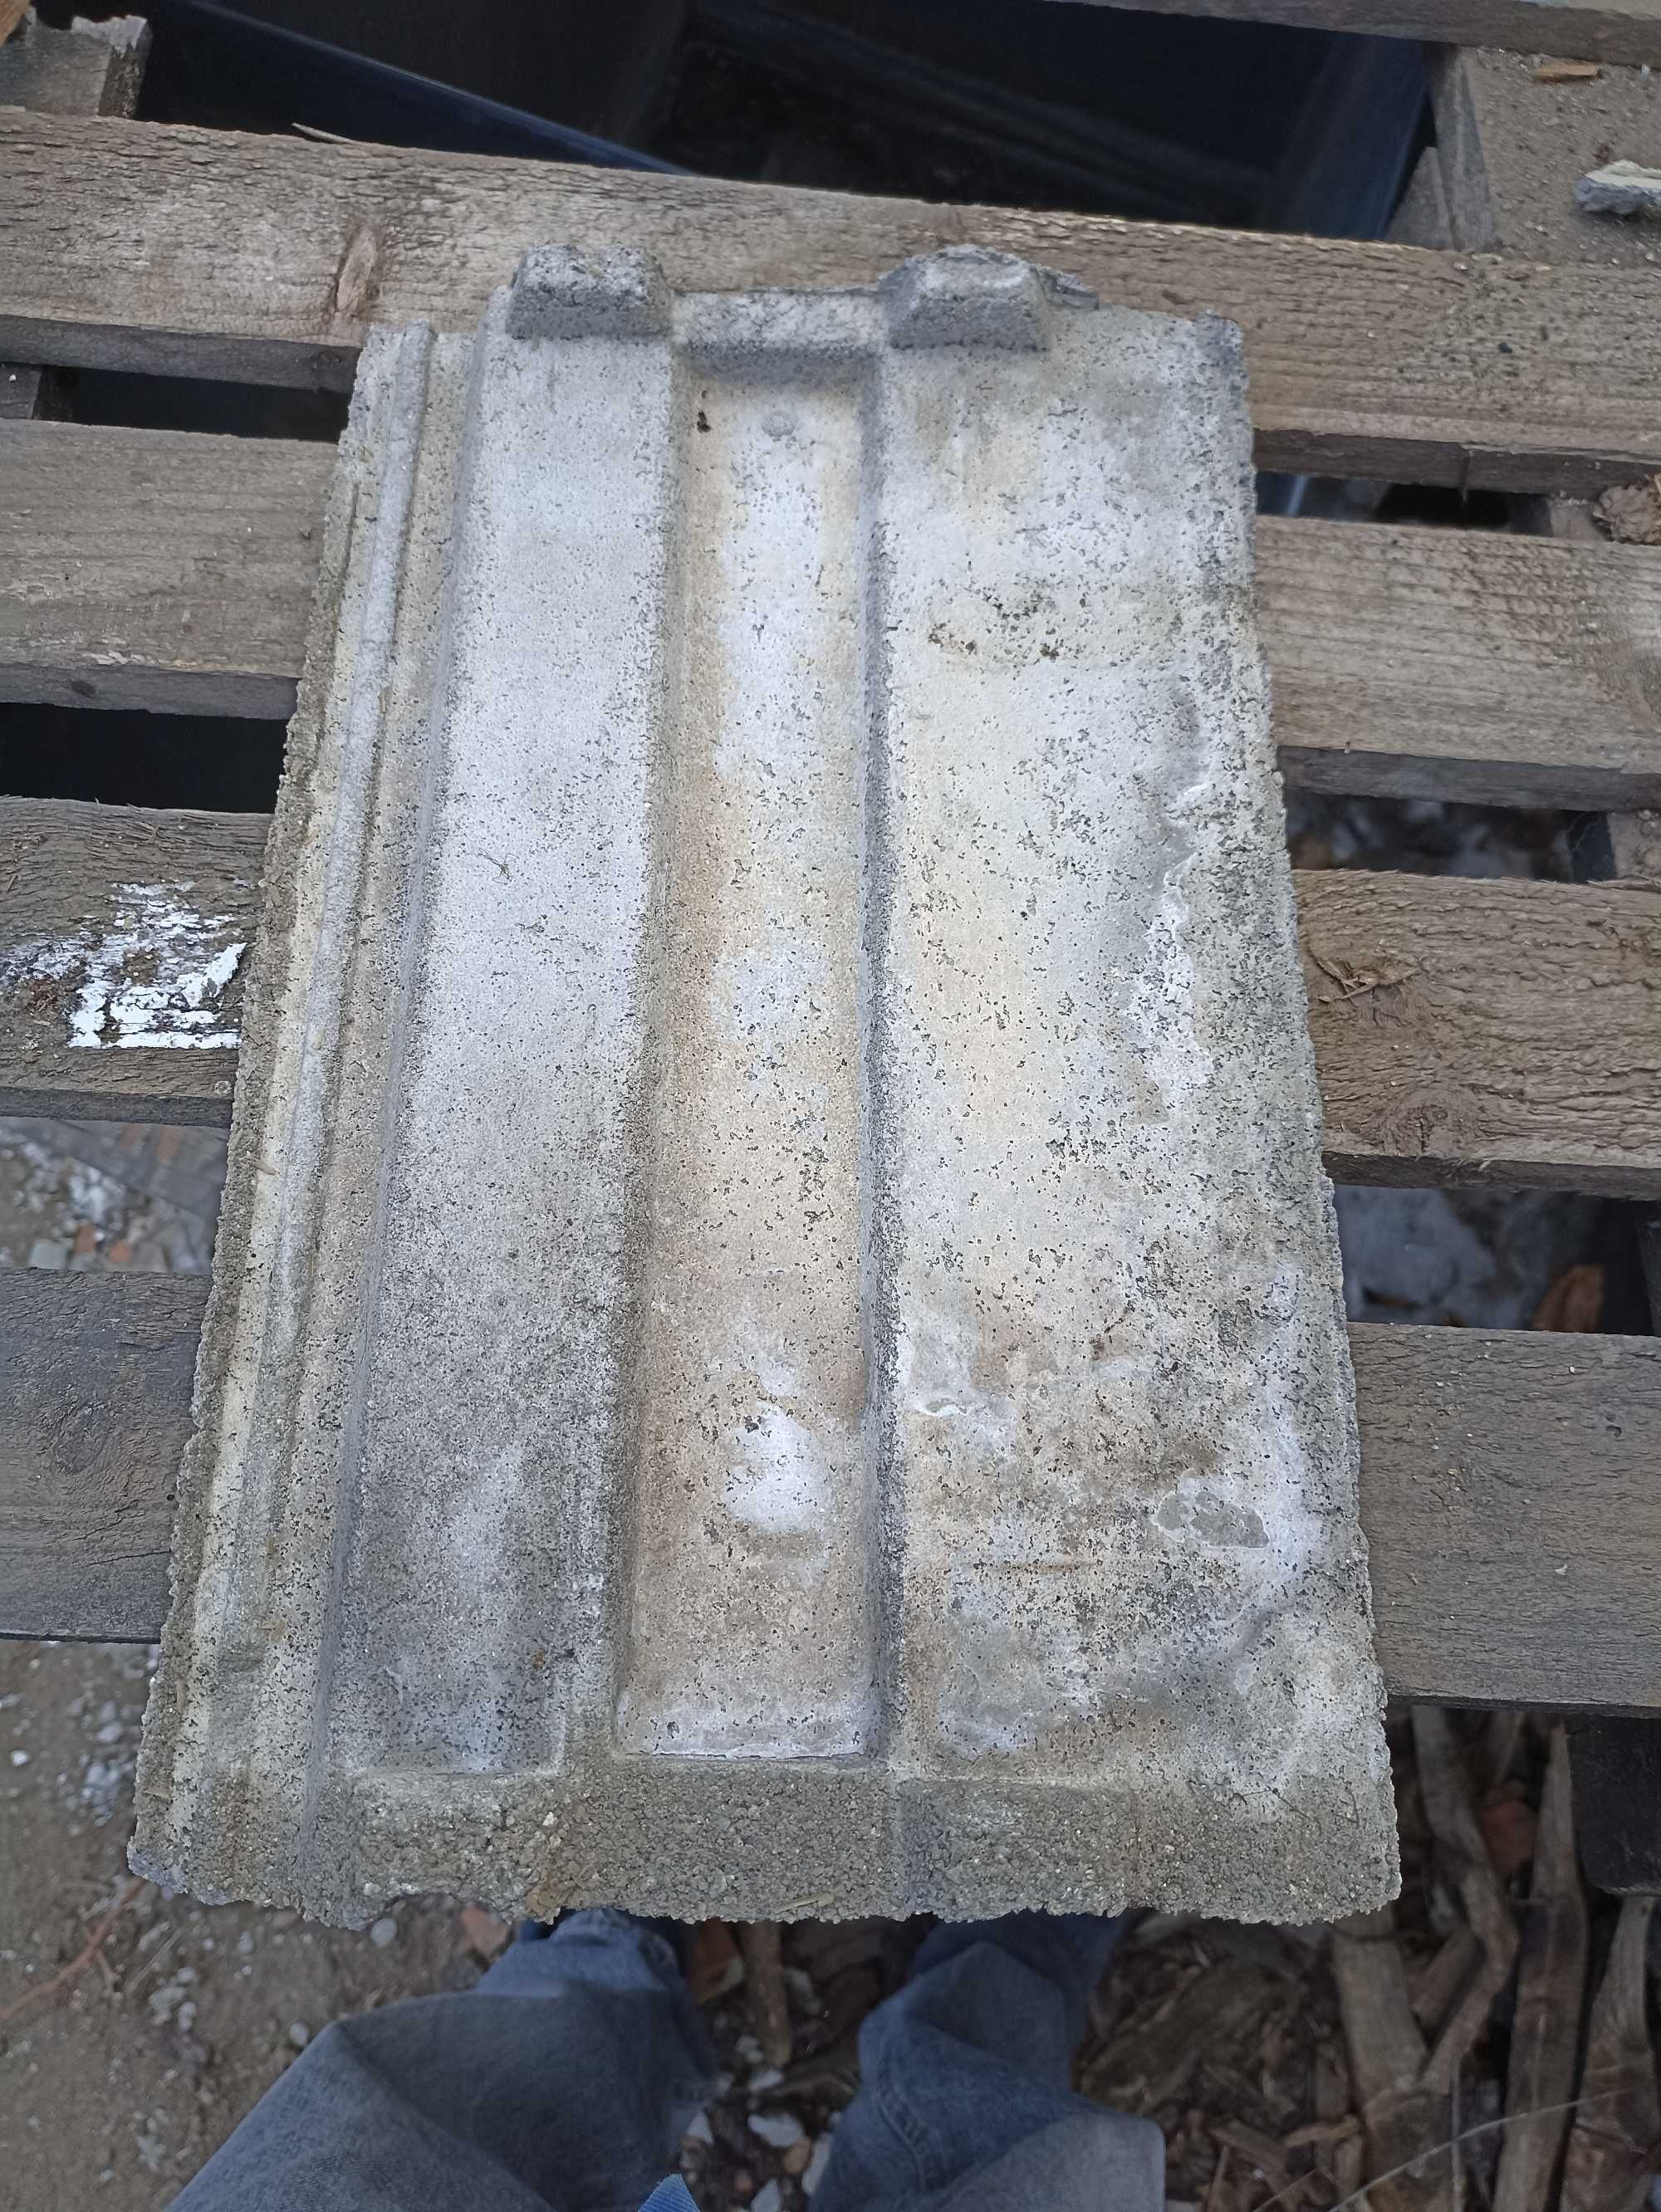 Tigla beton folosita